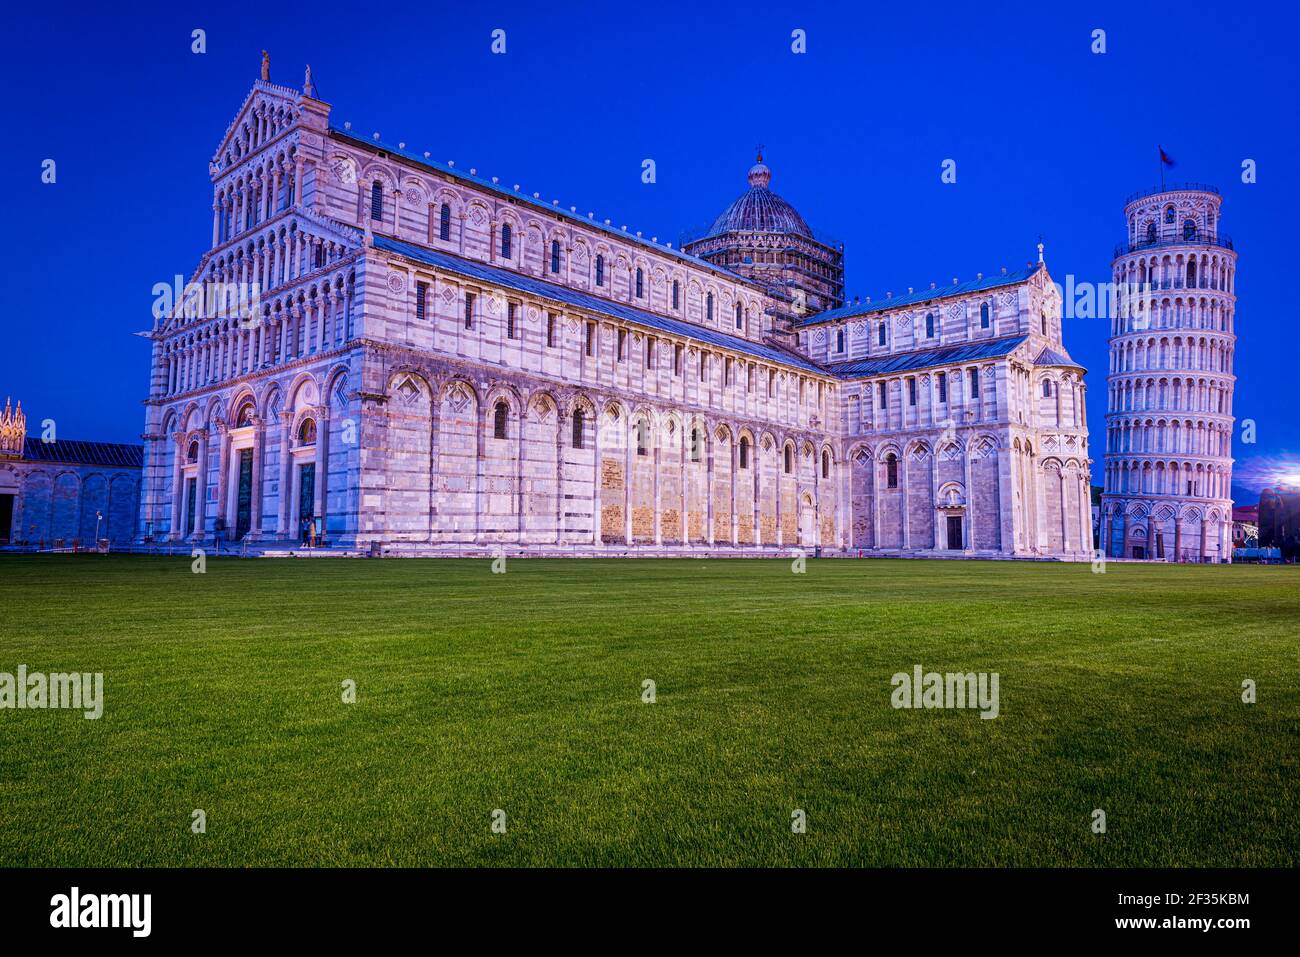 Historische Architekturdenkmäler, die von Reflektoren beleuchtet werden. Schiefer Turm von Pisa und Kathedrale von Pisa auf der Piazza Dei Miracoli, Pisa, Italien. Stockfoto